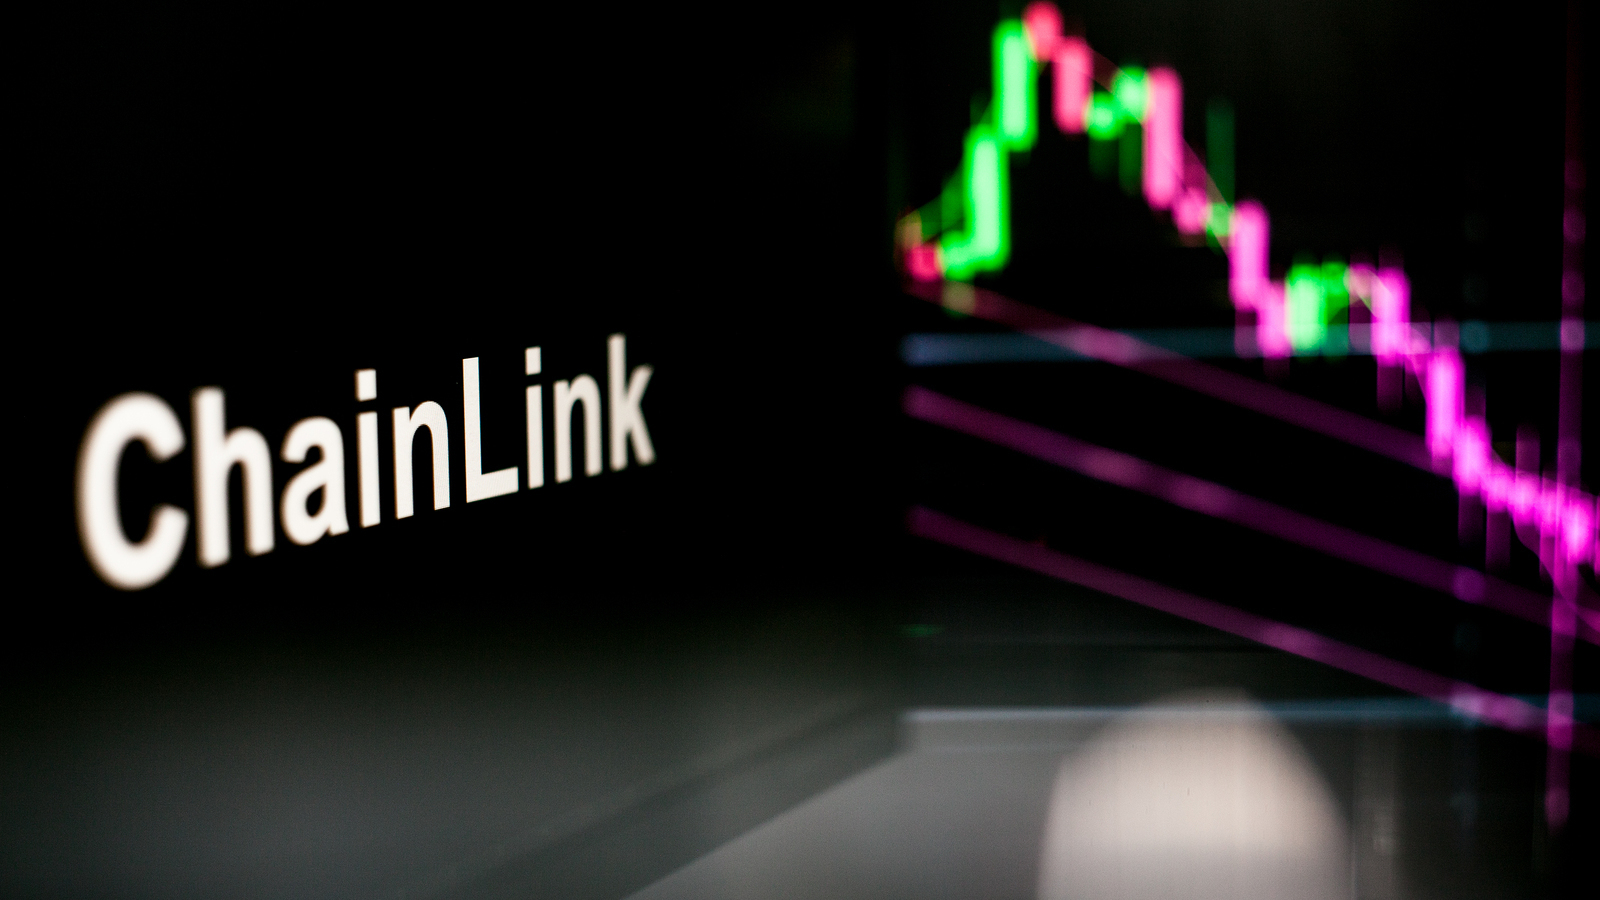 chainlink LINK borsa mevduat sayısı yüzde 740 arttı